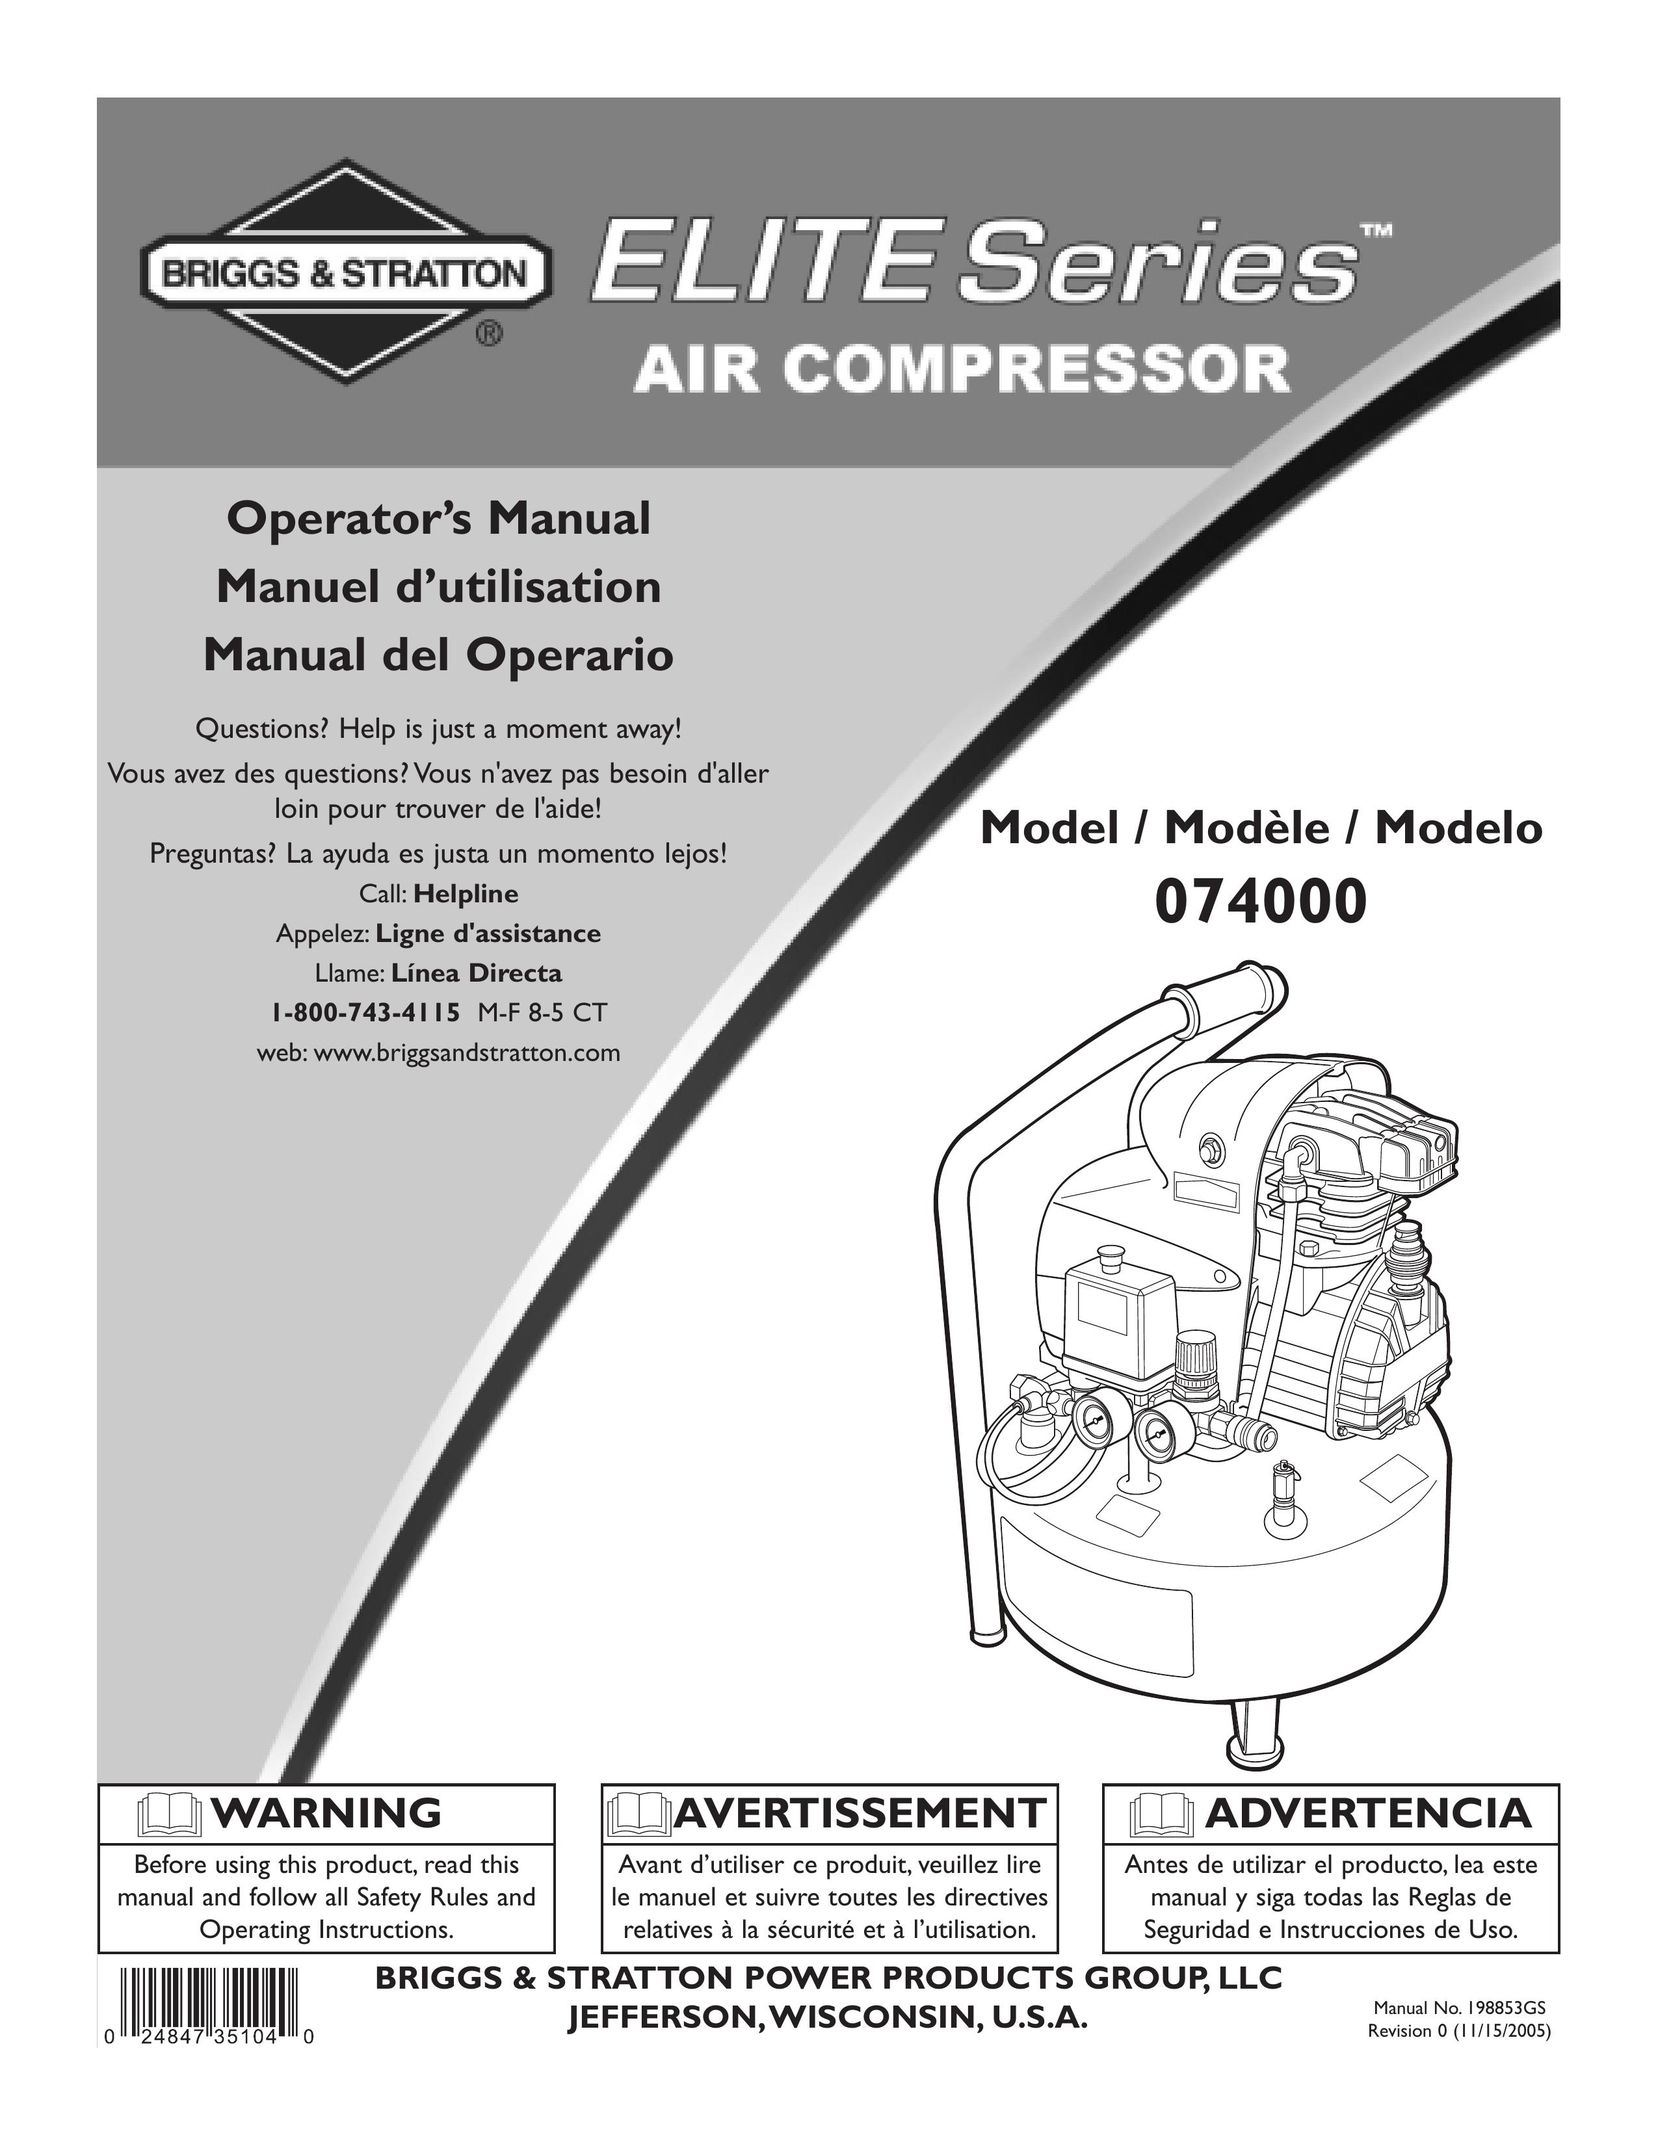 Briggs & Stratton 074000 Air Compressor User Manual